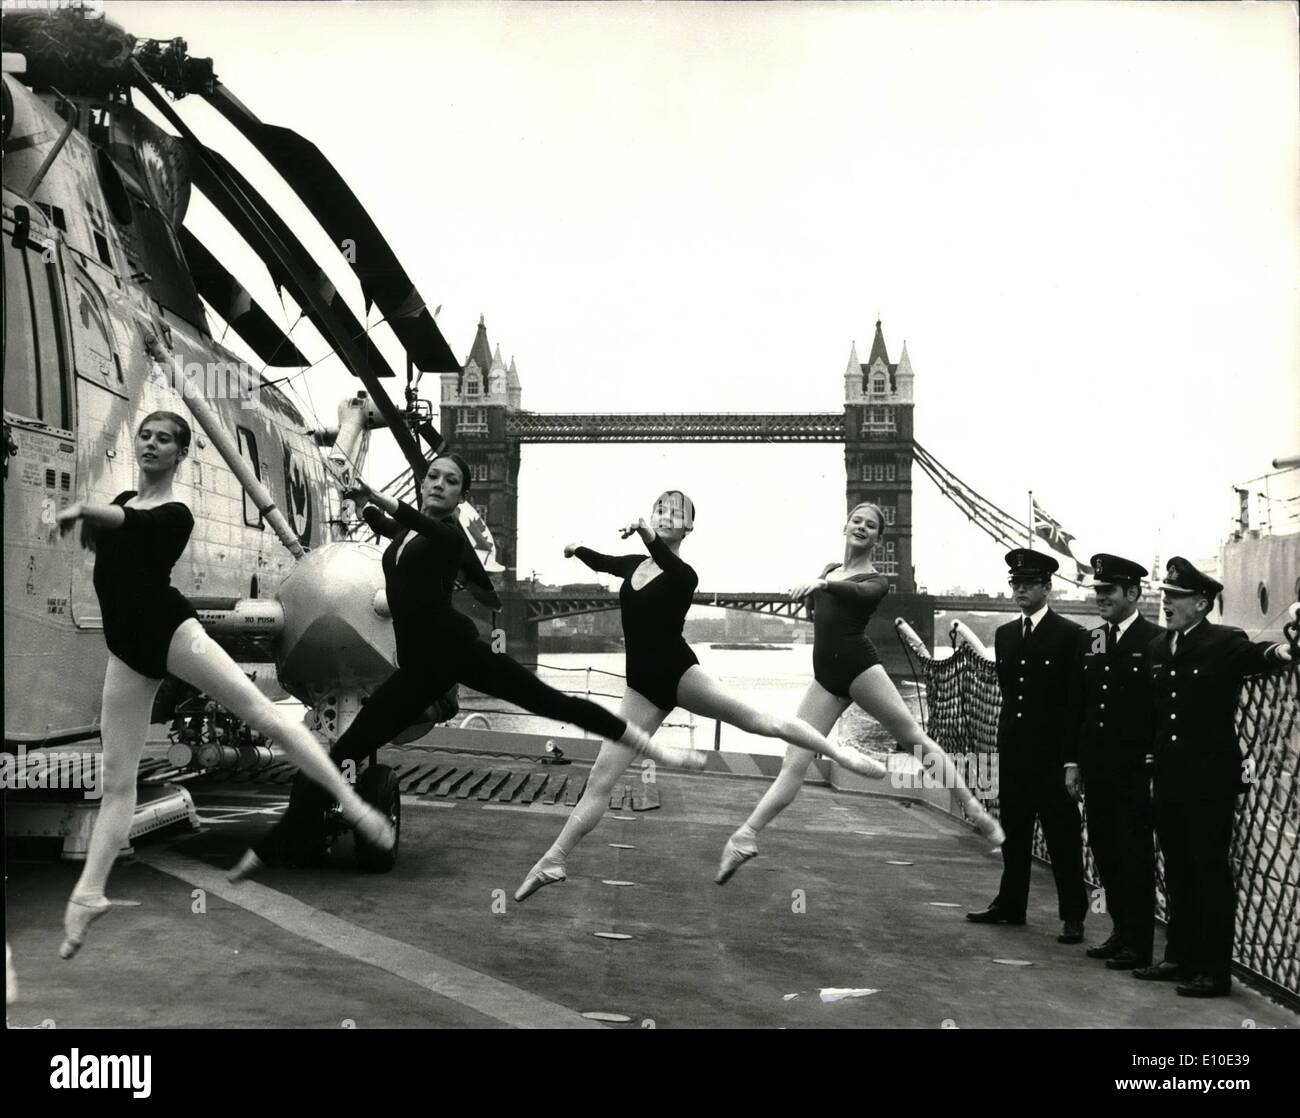 Maggio 05, 1972 - ballerini dal balletto nazionale del Canada intrattenuti su elicottero canadese distruttore, M.N.C&GT;S&GT; Annapolis. Ufficiali ed equipaggi di H.M.C.S. Annapolis, disputate oggi ospita ai membri del Balletto Nazionale del Canada a bordo dell'elicottero canadese distruttore. Il comandante A.P. Campbell ha invitato cinque ragazze formano la compagnia di balletto di visitare la nave e da fornire un tour della sua prima di avere un caffè con gli ufficiali nella sala Ward Foto Stock